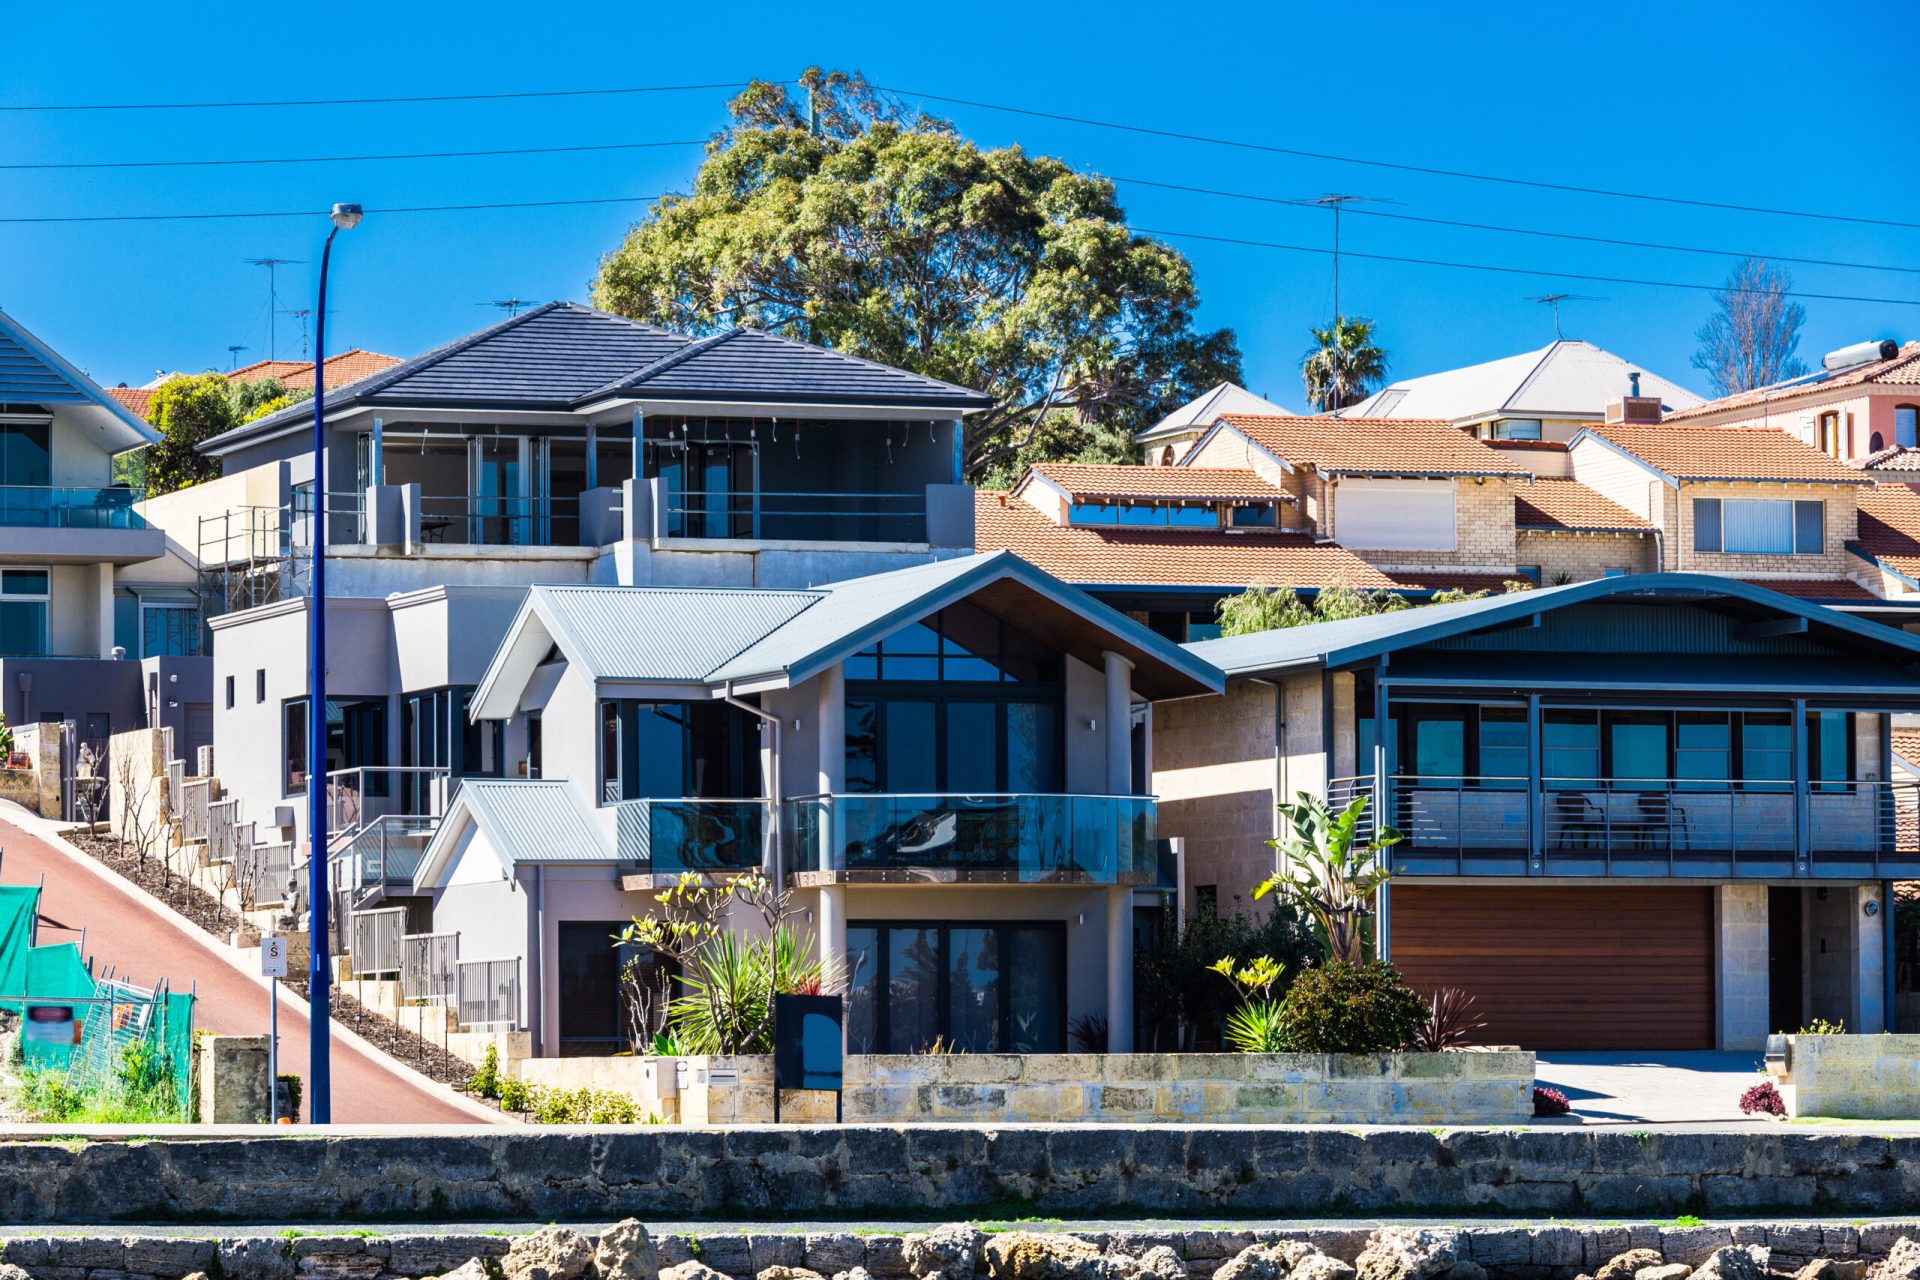 Funding large houses in Australian beachside suburb